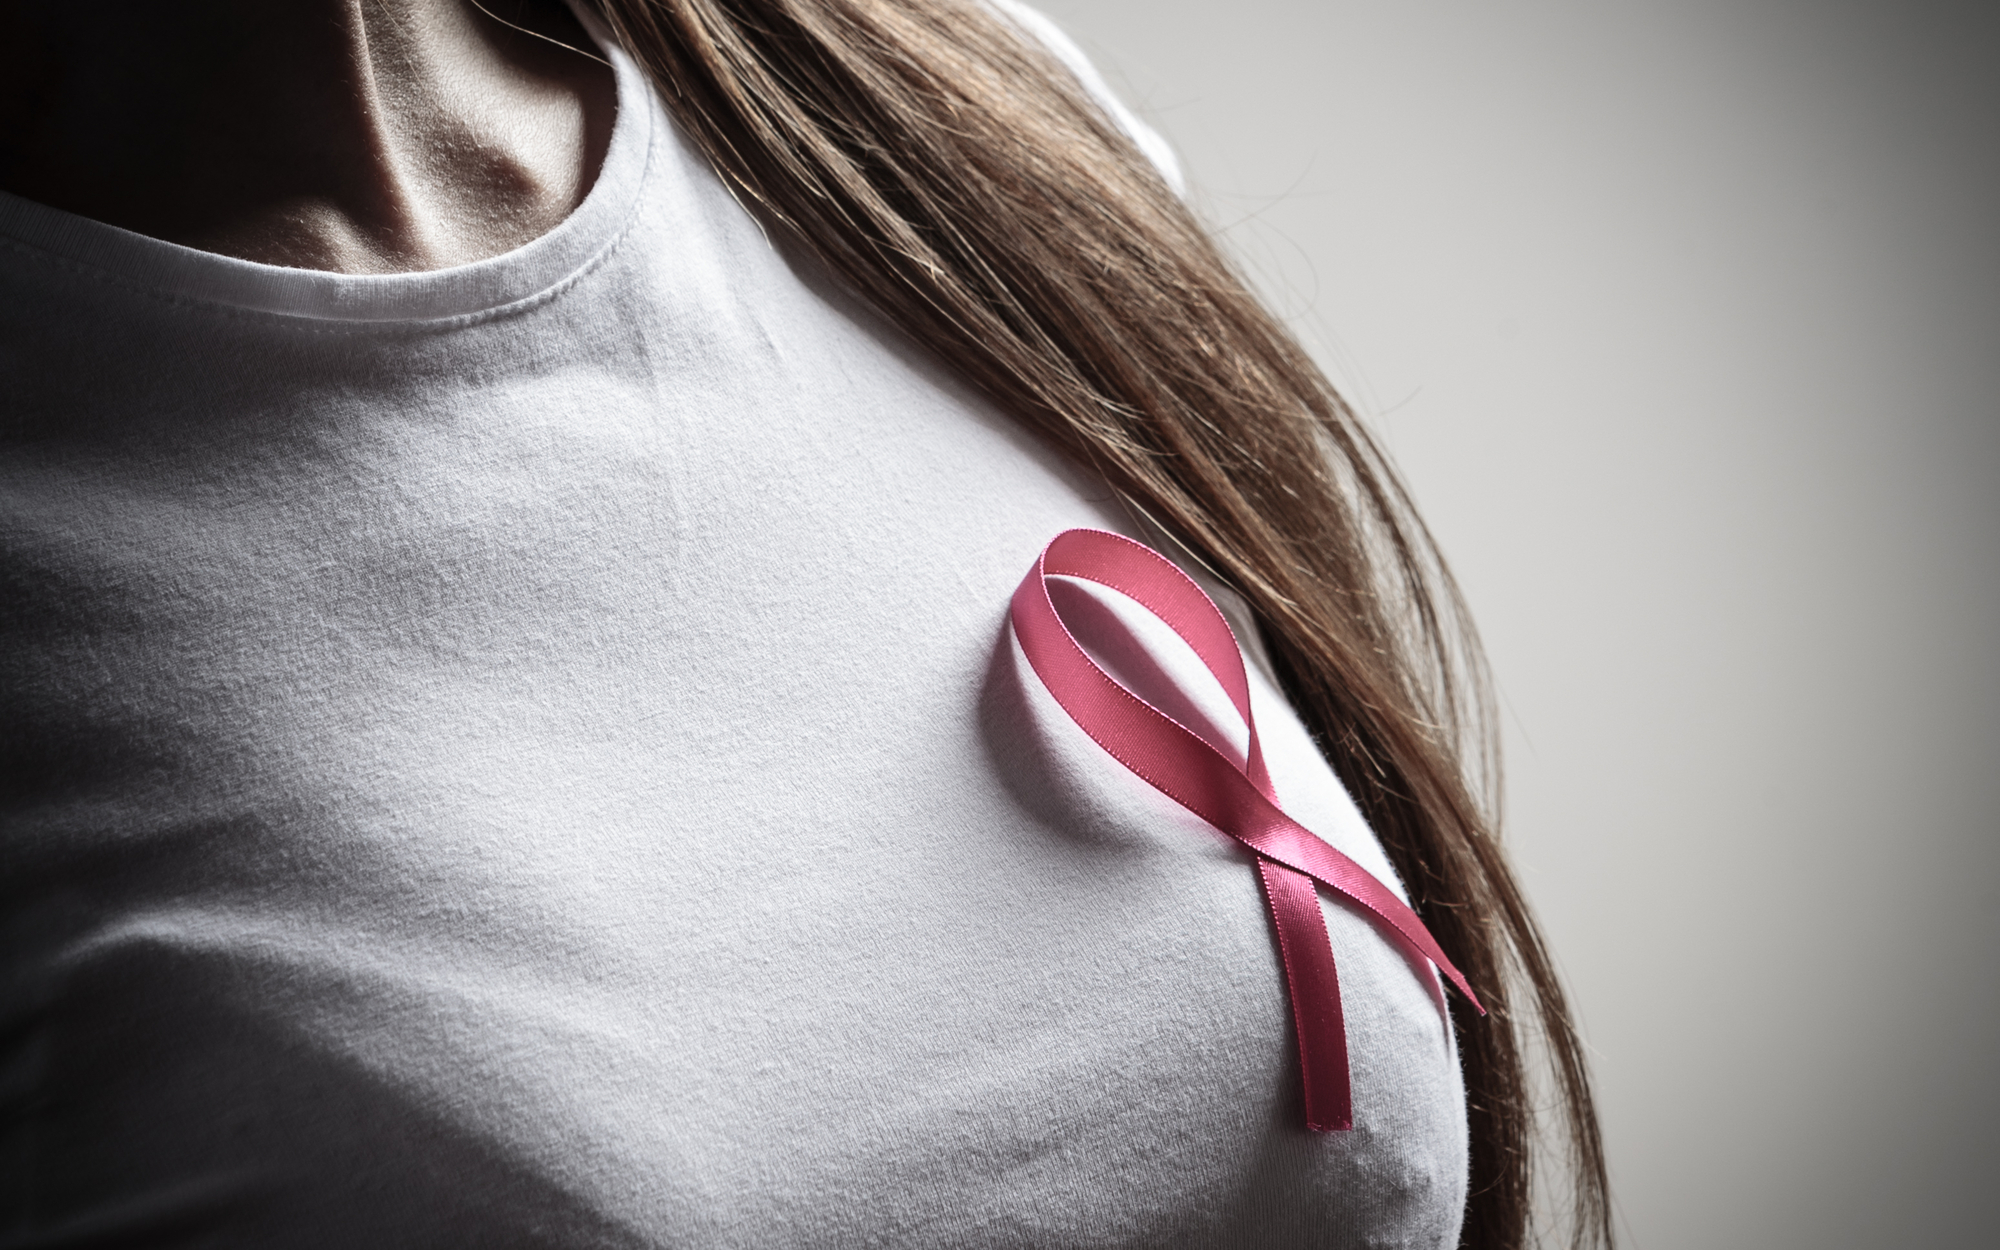 Rak piersi ‒ najważniejsze czynniki żywieniowe